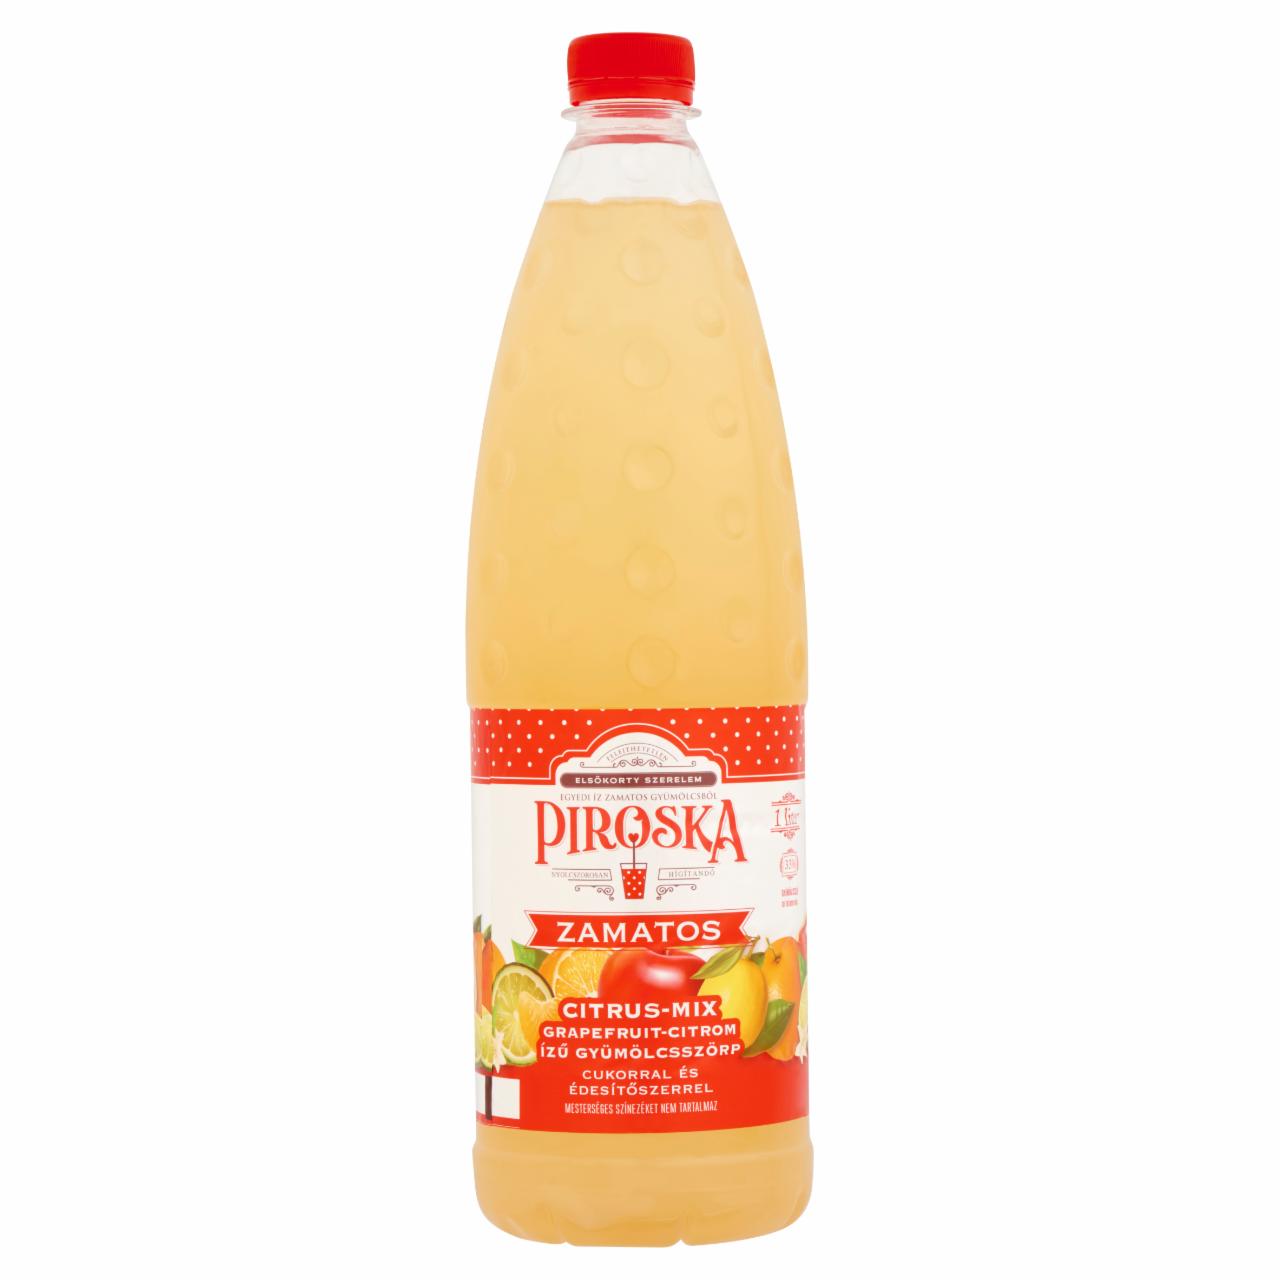 Képek - Piroska Citrus-Mix grapefruit-citrom ízű gyümölcsszörp cukorral és édesítőszerrel 1 l